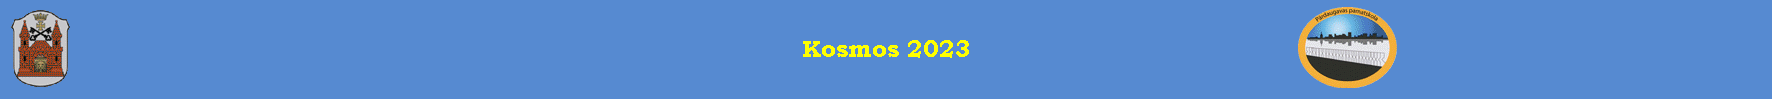 Kosmos 2023